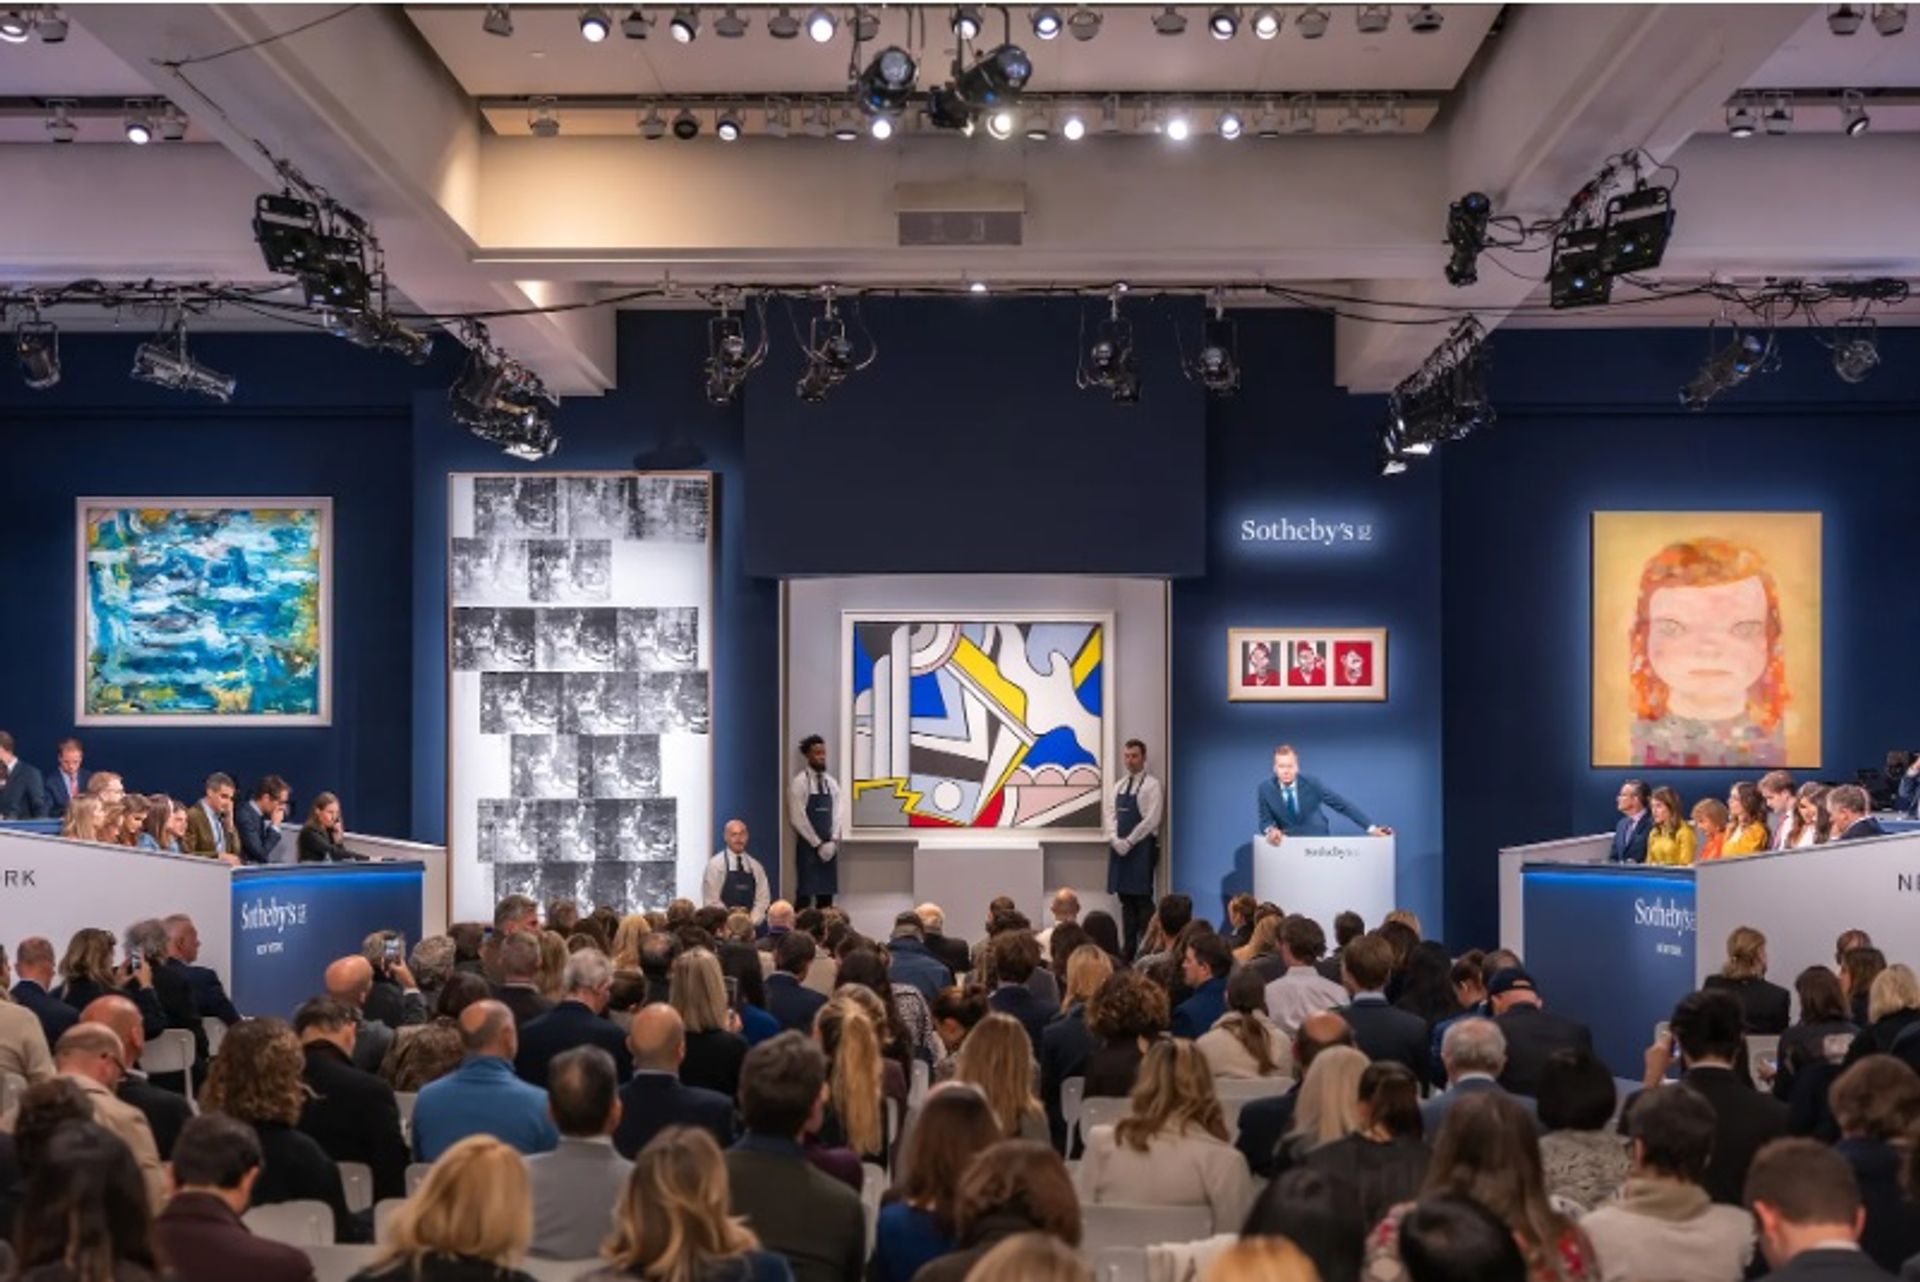 יו"ר "סותבי'ס" אירופה, אוליבר בארקר, מנחה את מכירת ערב אמנות עכשווית, בניו יורק, ב-16 בנובמבר.

© Julian Cassady Photography, באדיבות Sotheby's